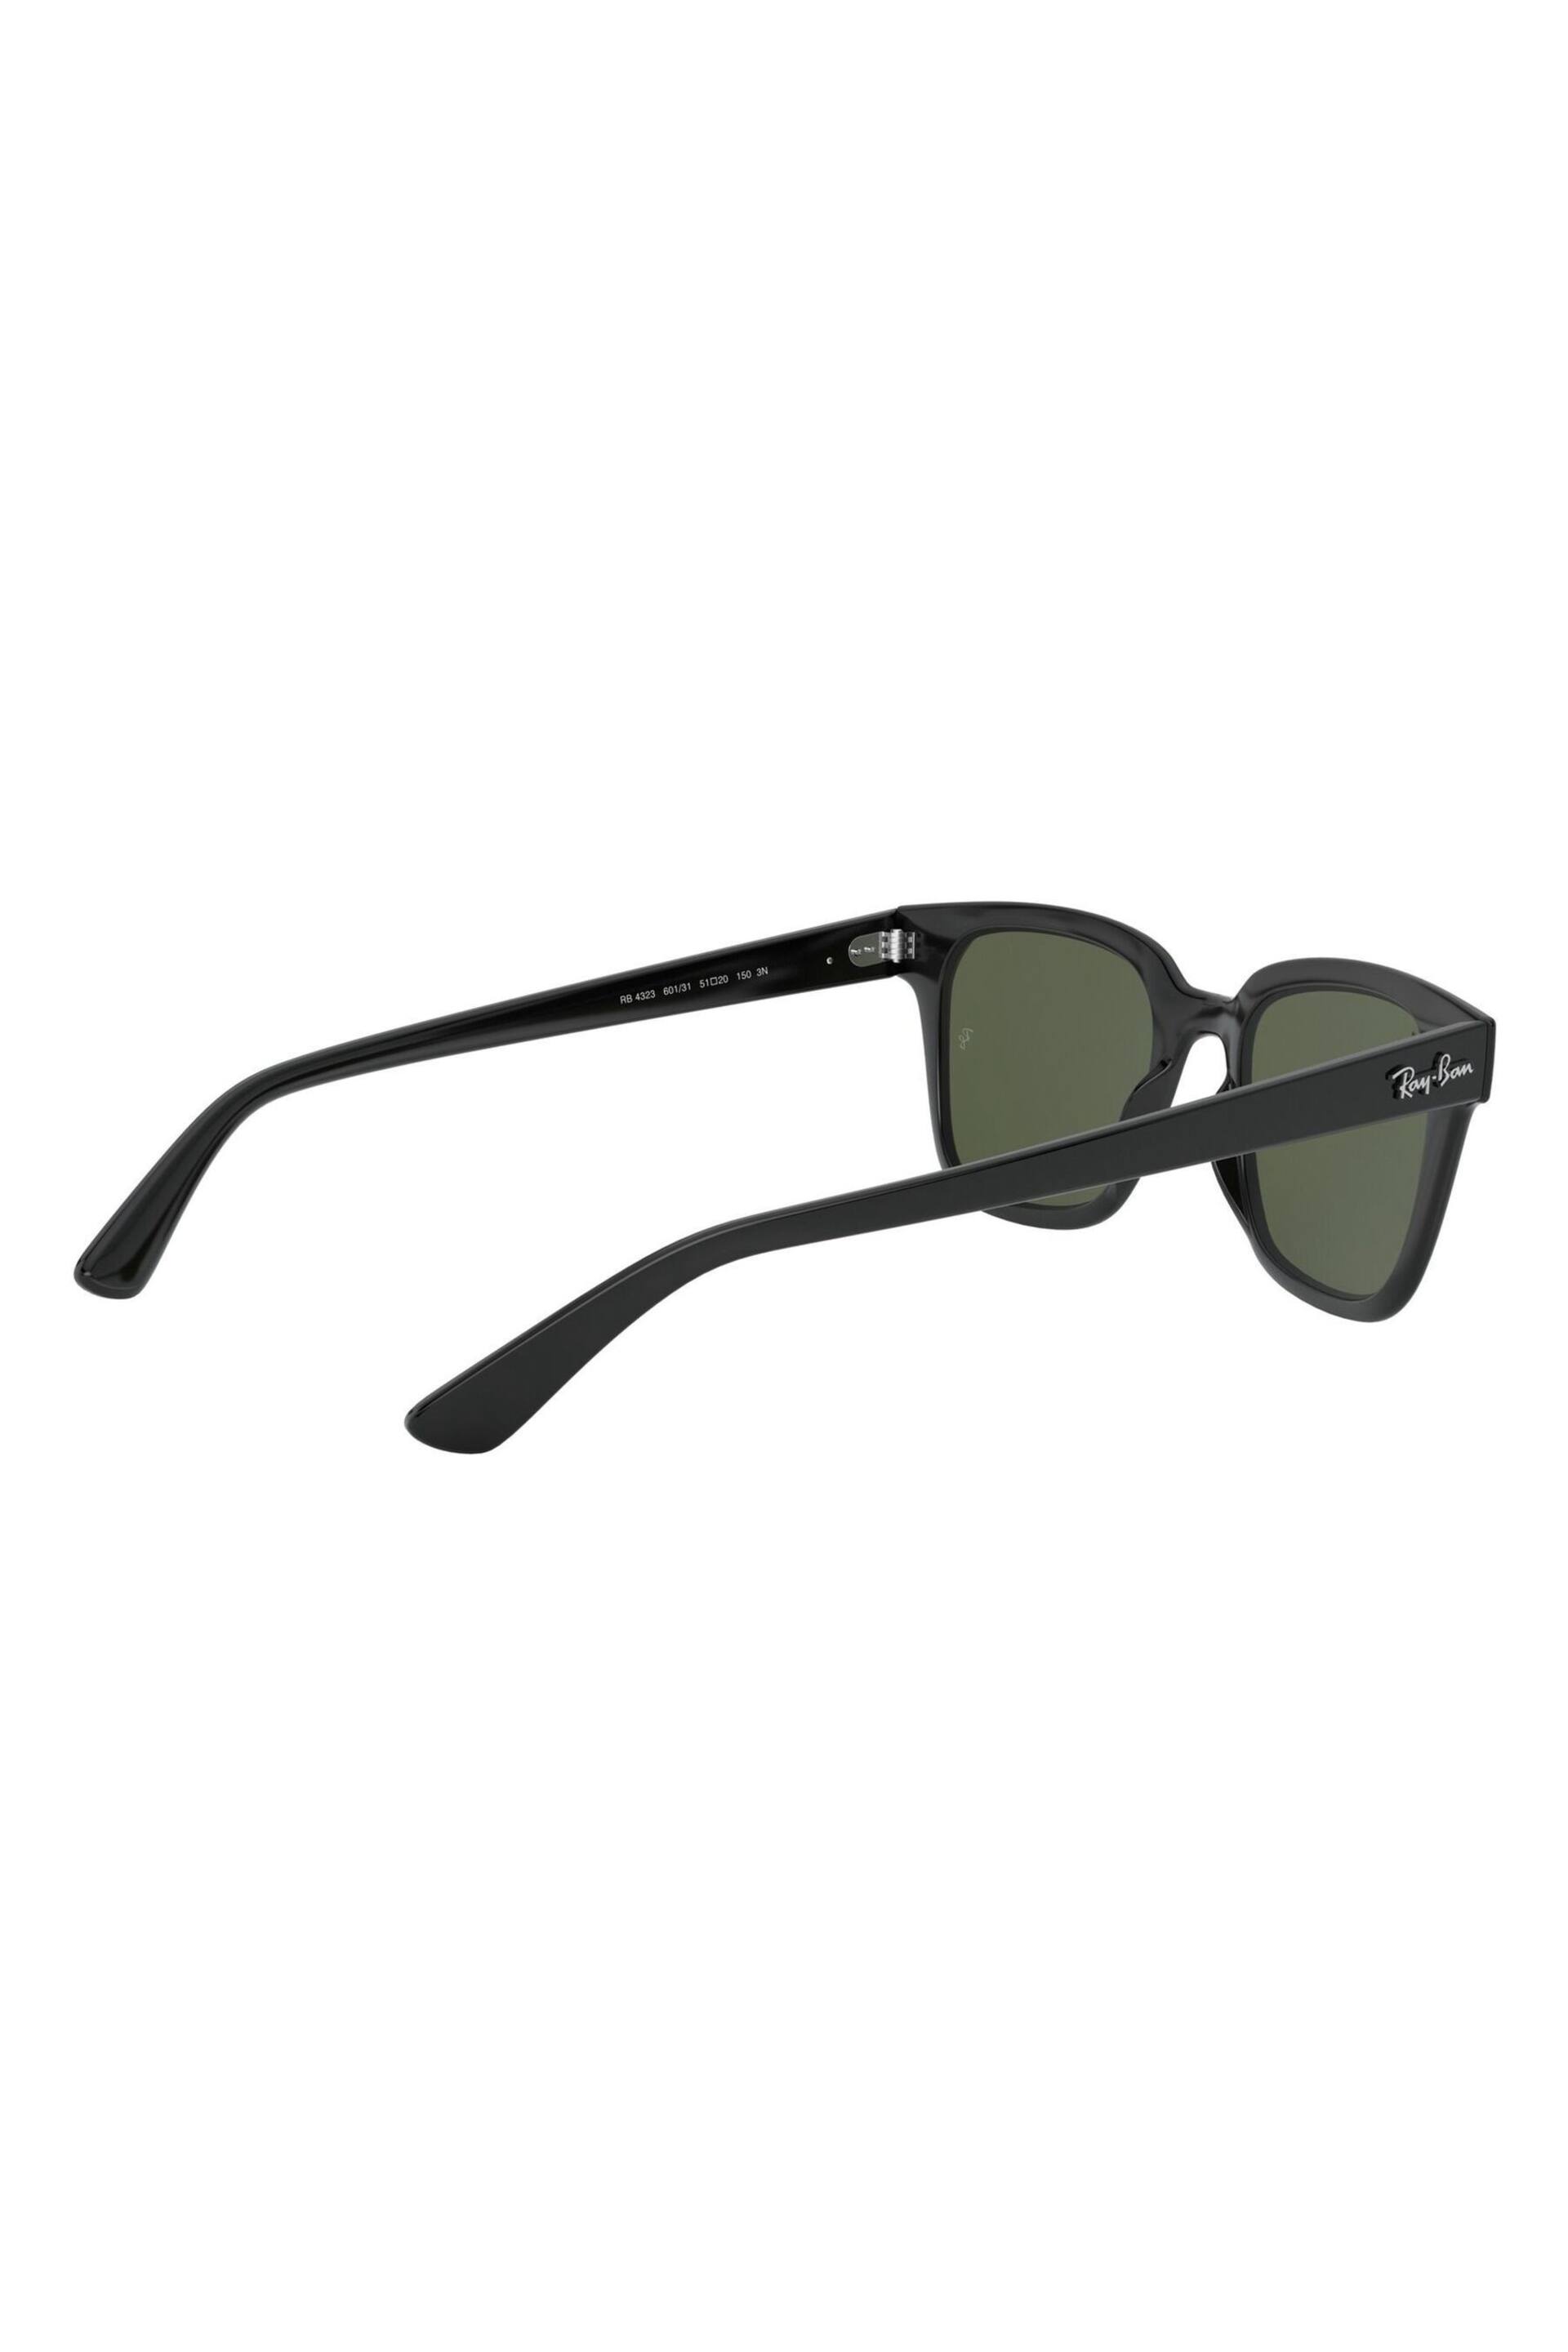 Ray-Ban RB4323 Wayfarer Sunglasses - Image 5 of 12